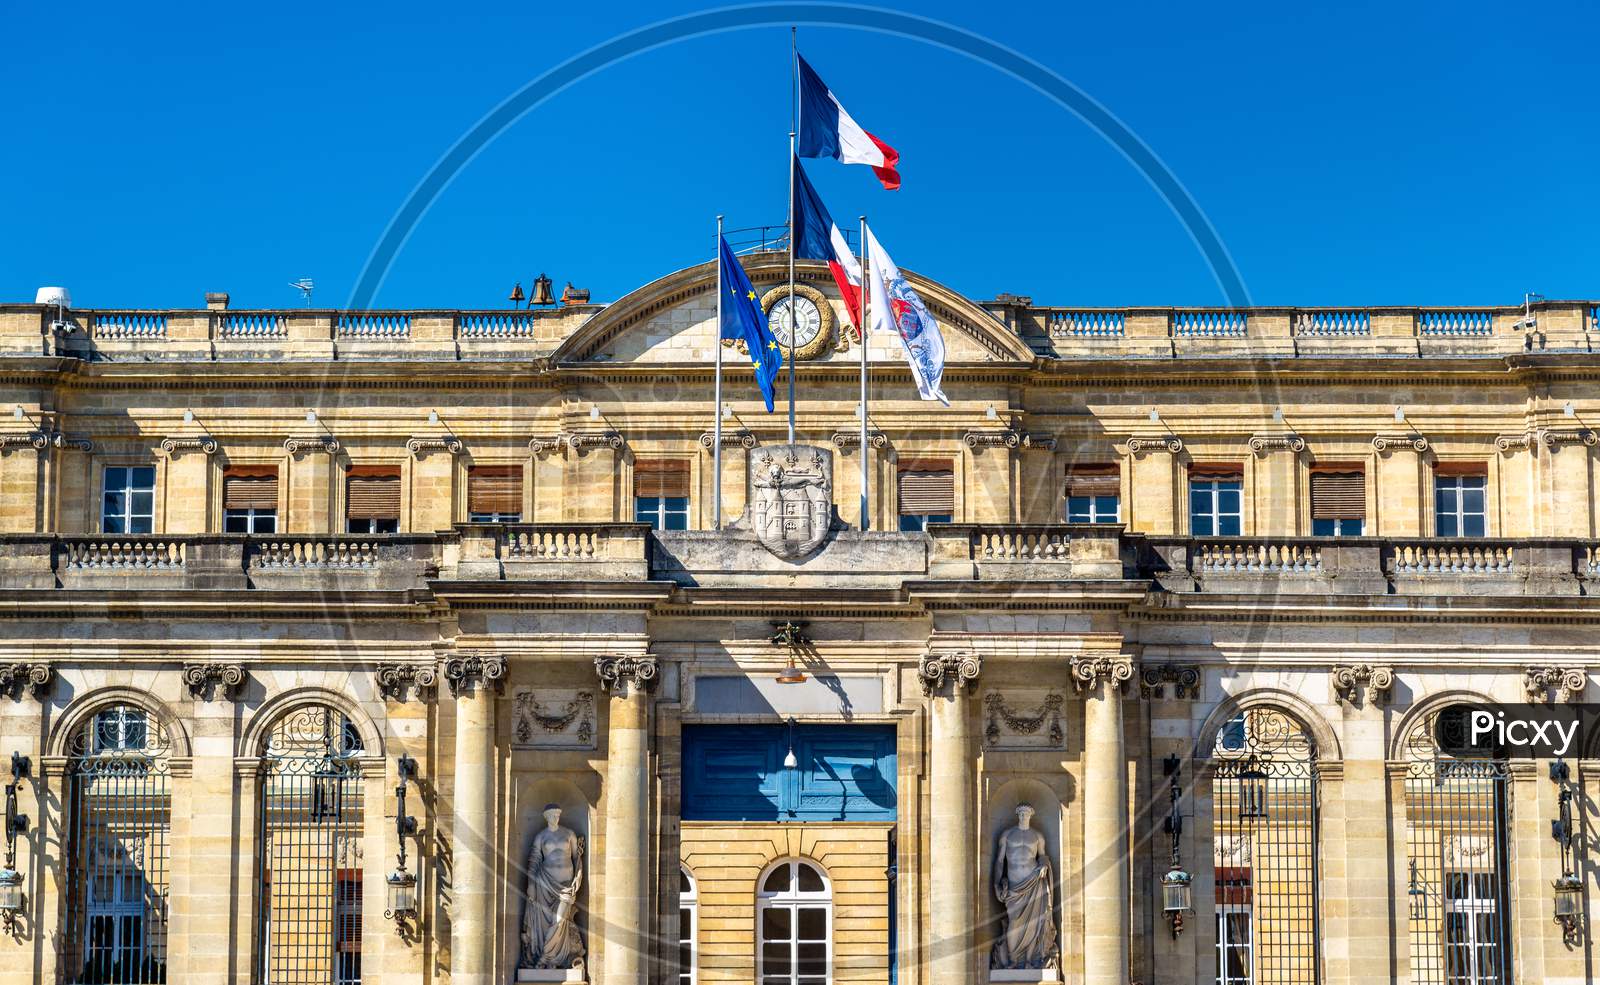 Palais Rohan, The City Hall Of Bordeaux - France